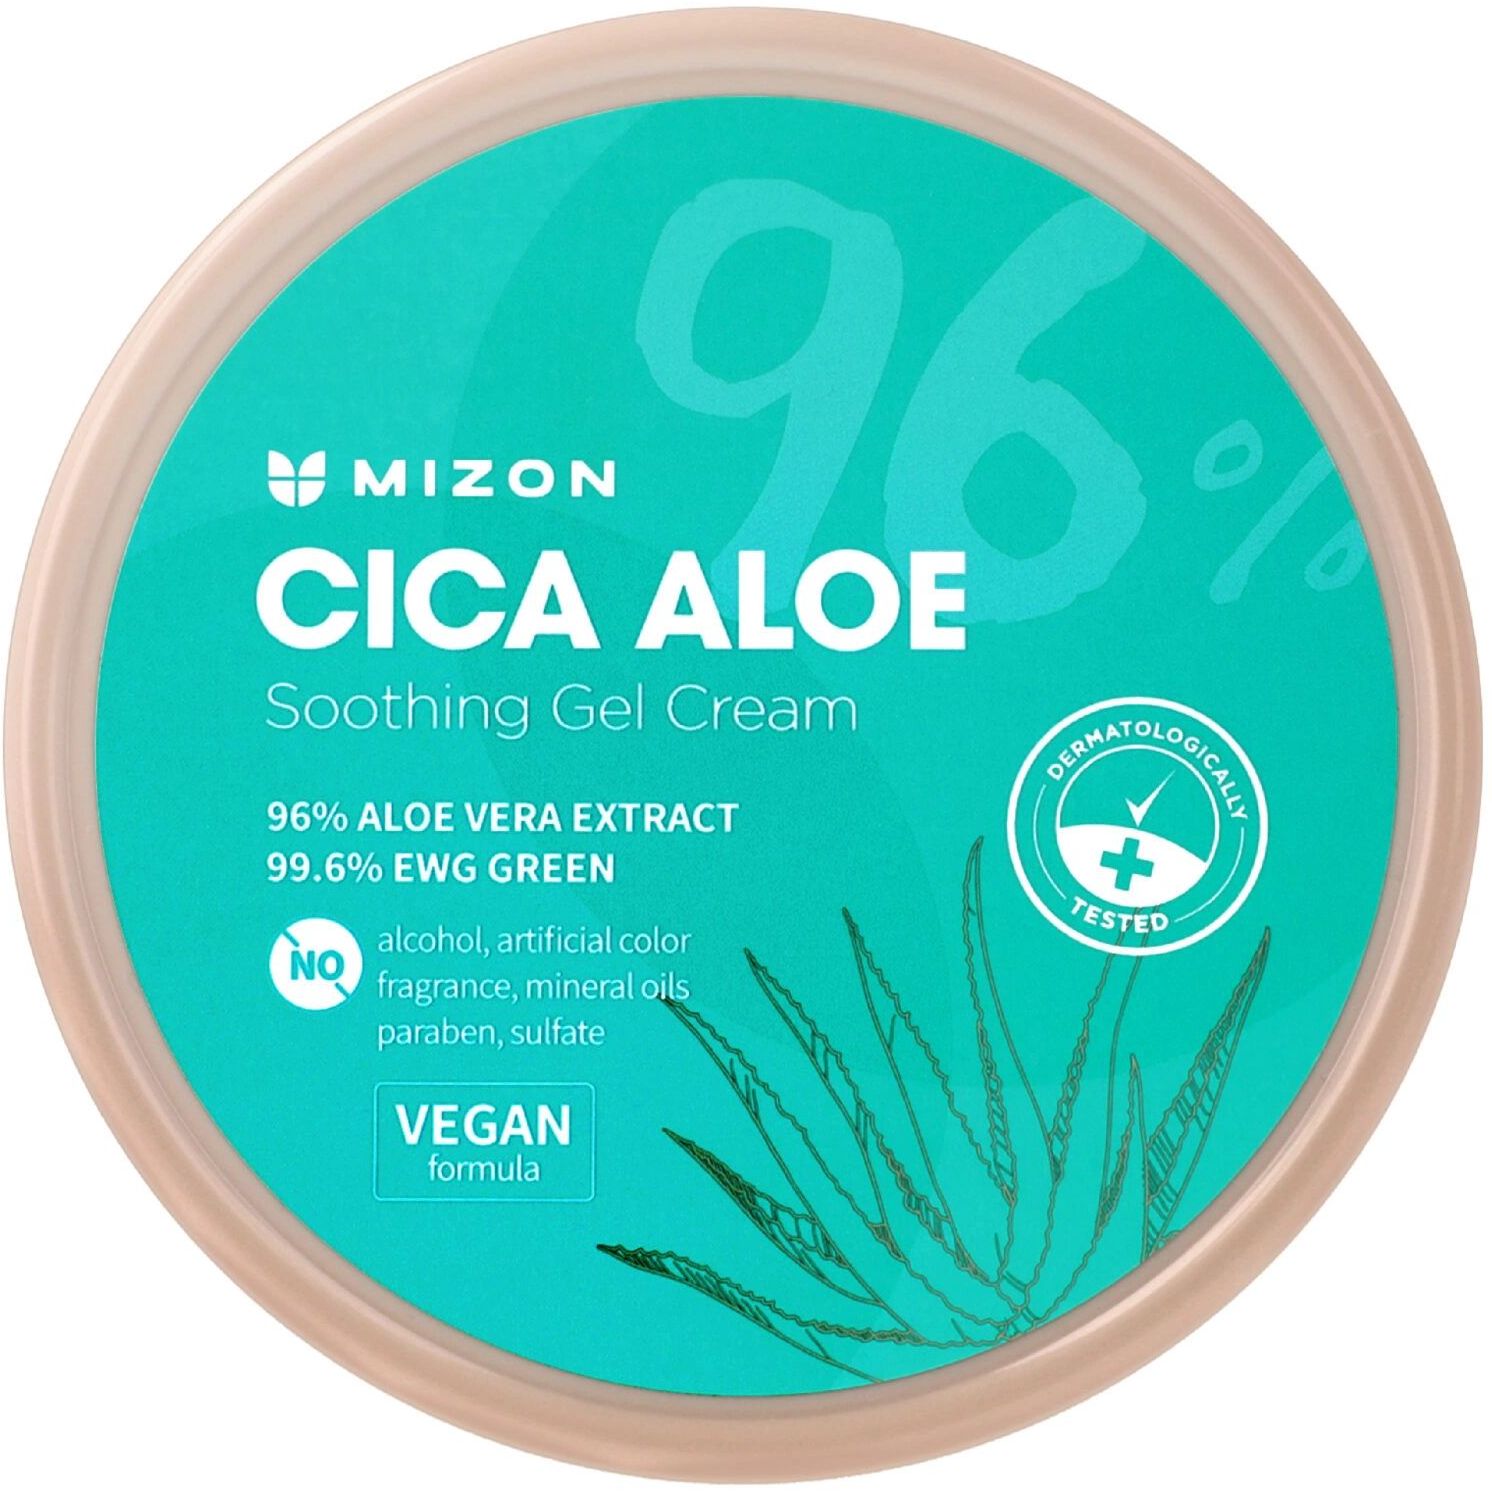 Успокаивающий гель-крем для тела Mizon Cica Aloe 96% Soothing Gel Cream с алоэ, 300 г - фото 1